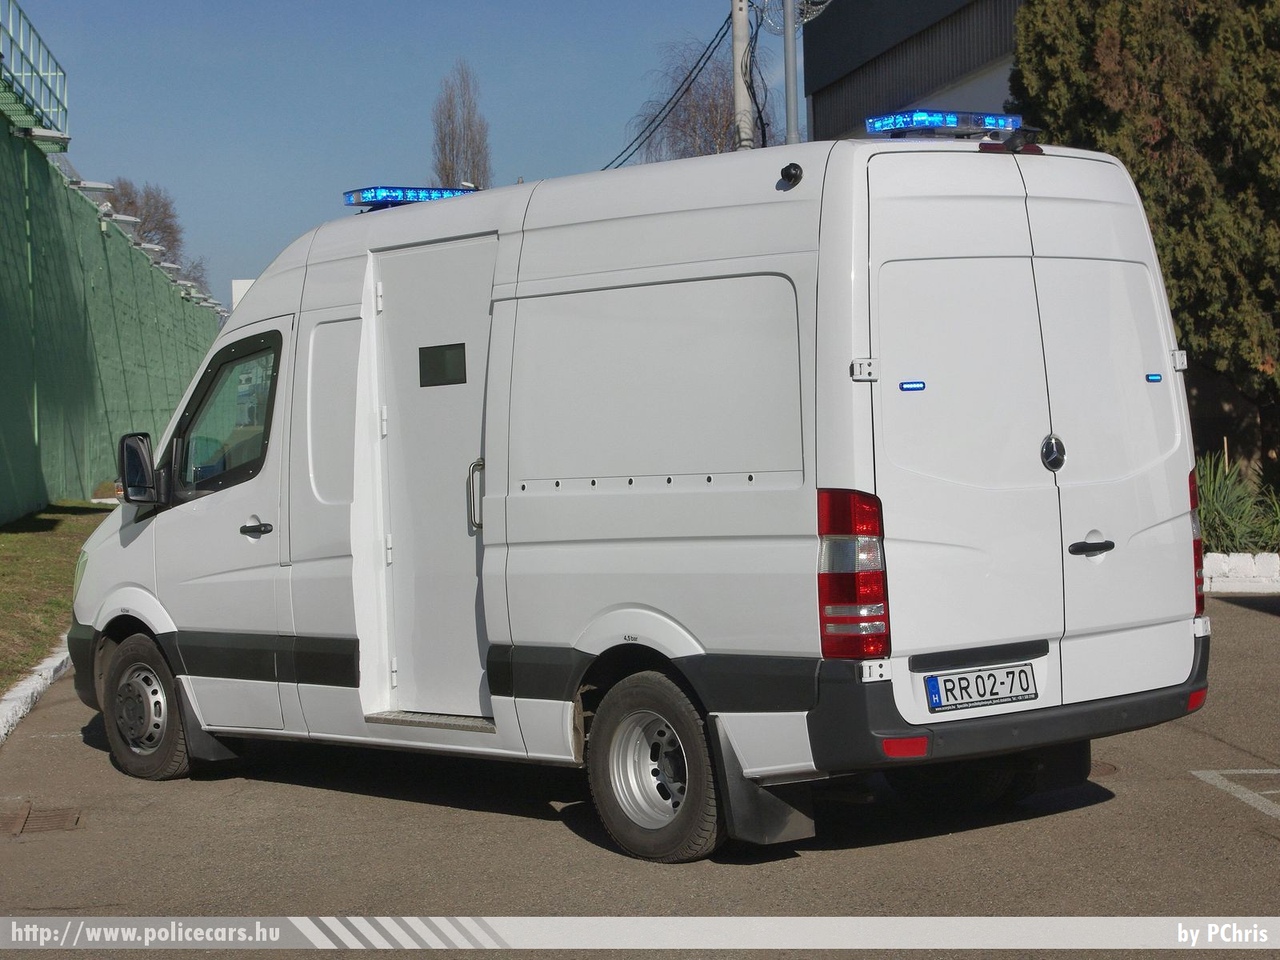 Mercedes-Benz Sprinter II facelift, fotó: PChris
Keywords: BV RR02-70 BV magyar Magyarország Hungary hungarian prison  Büntetés-végrehajtás